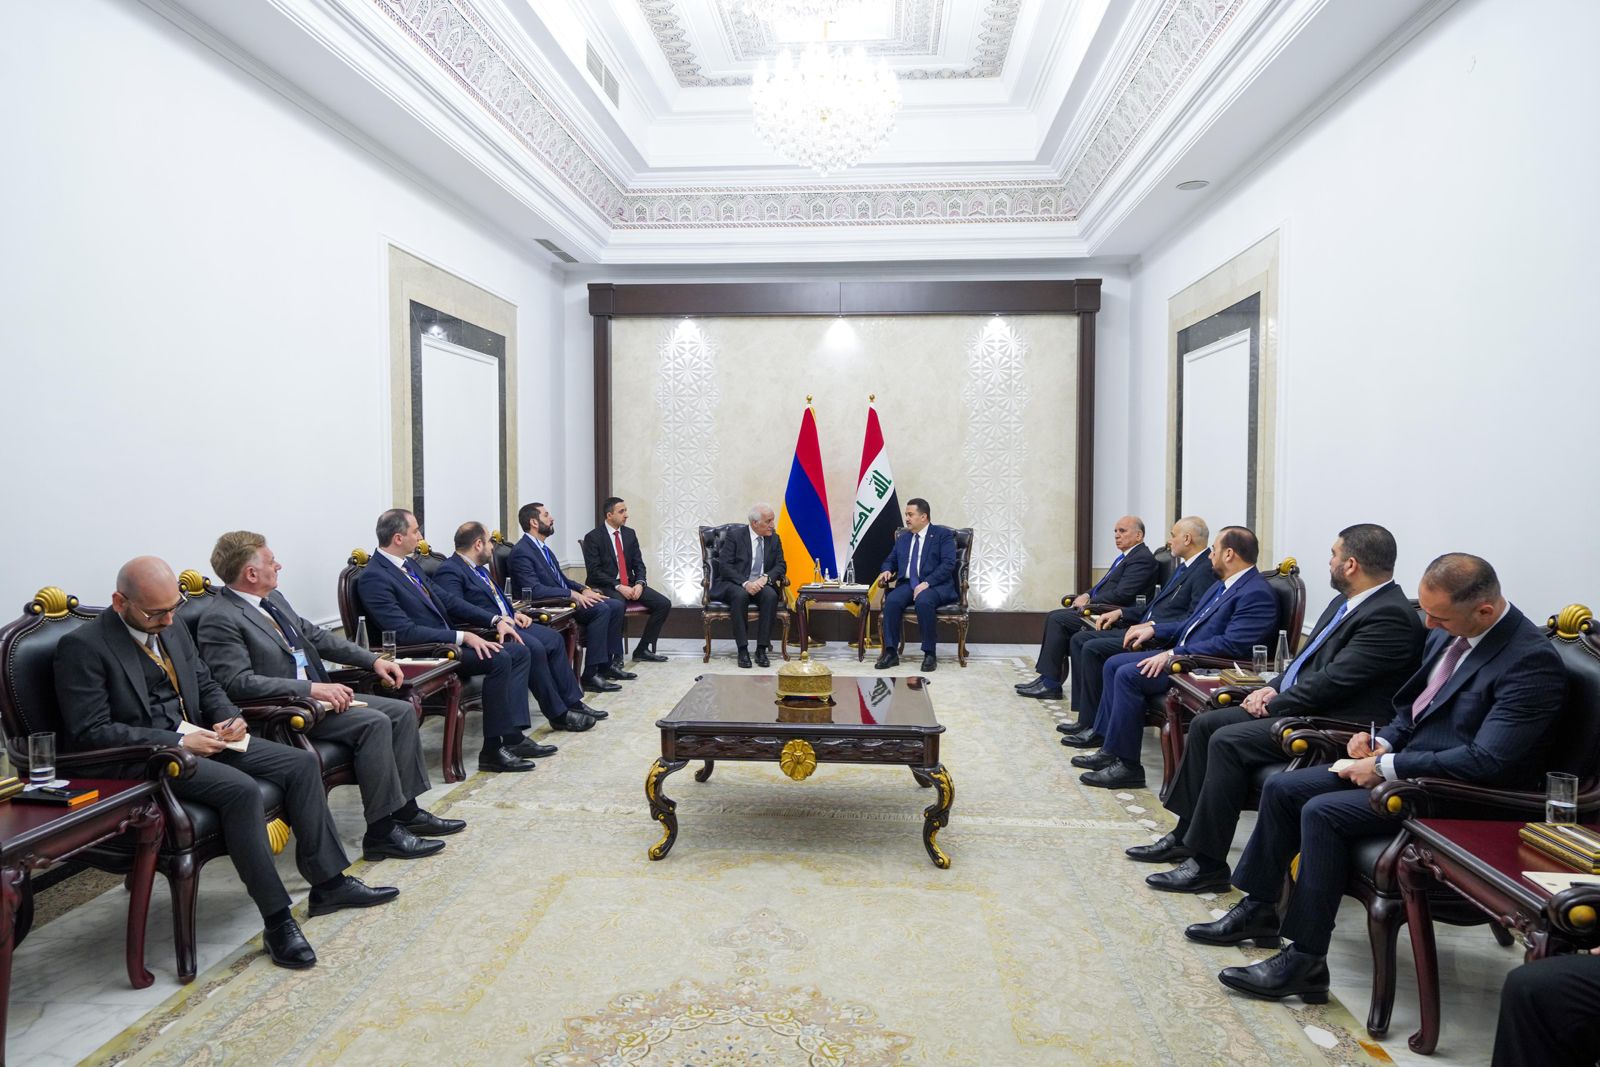 العراق وأرمينيا يؤكدان على التعاون بين البلدين في كافة المجالات